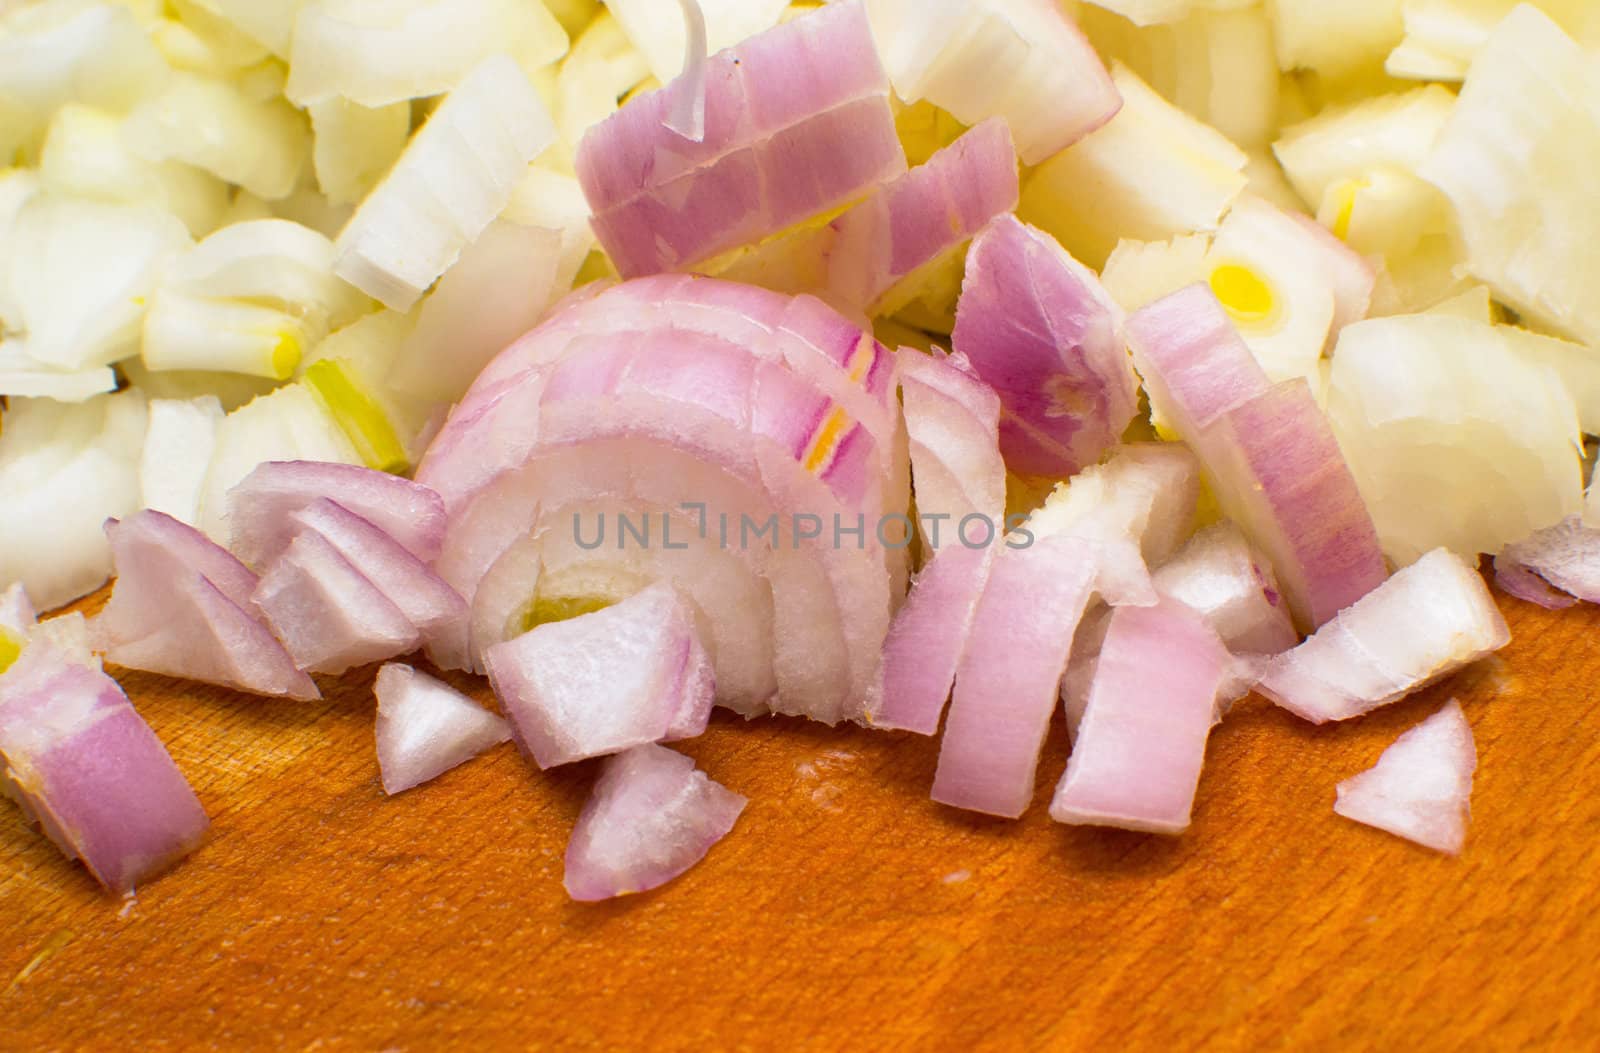 raw onions by Lexxizm